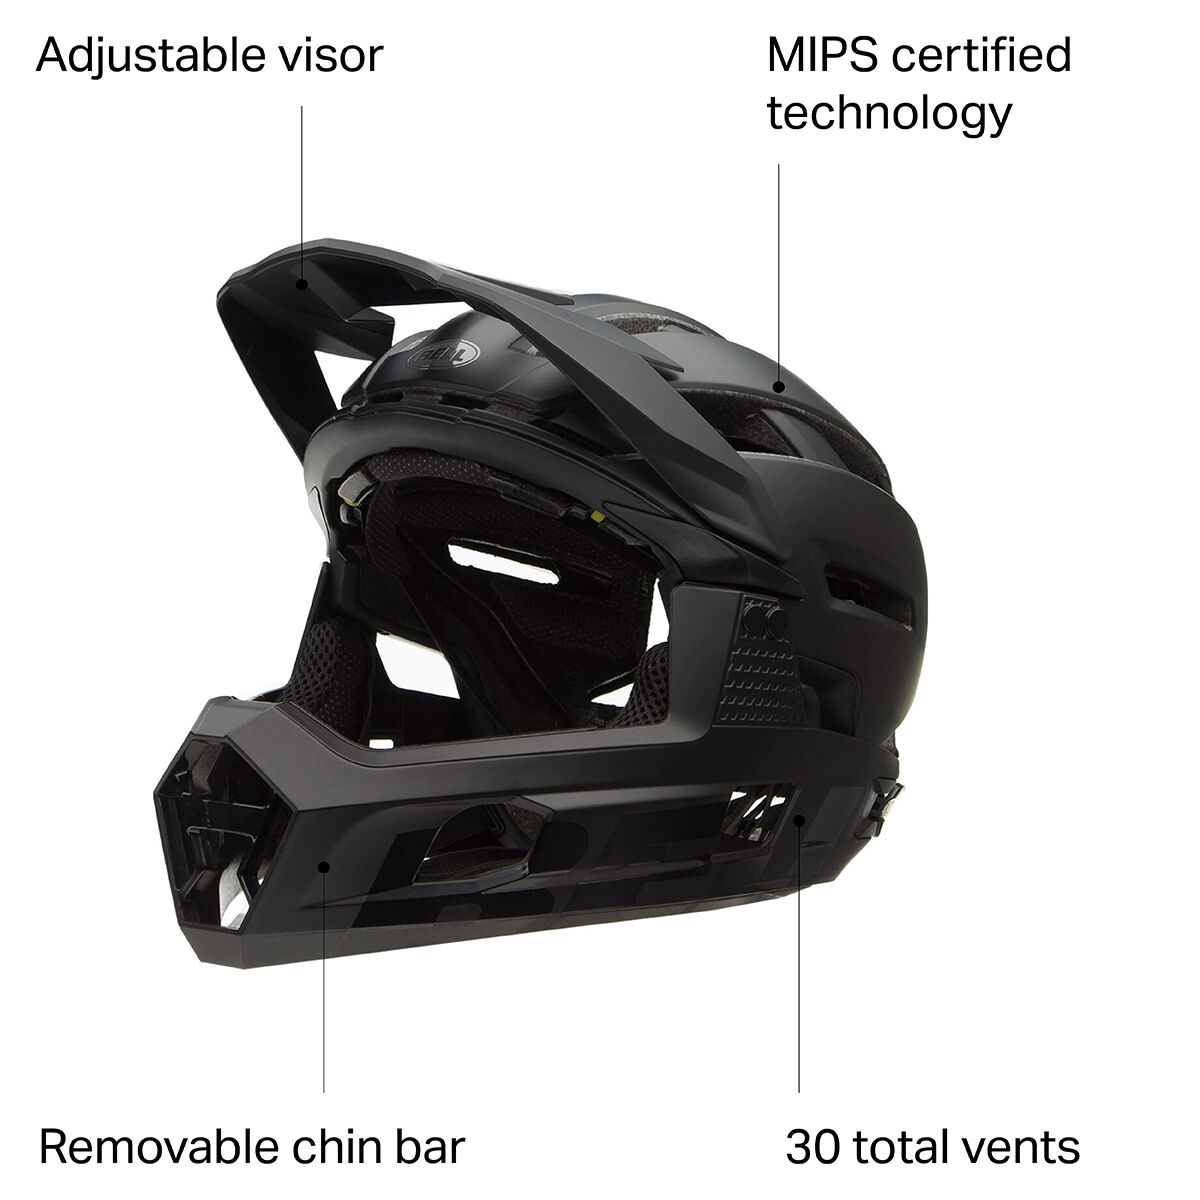  Bell Super Air R MIPS Helmet - Bike